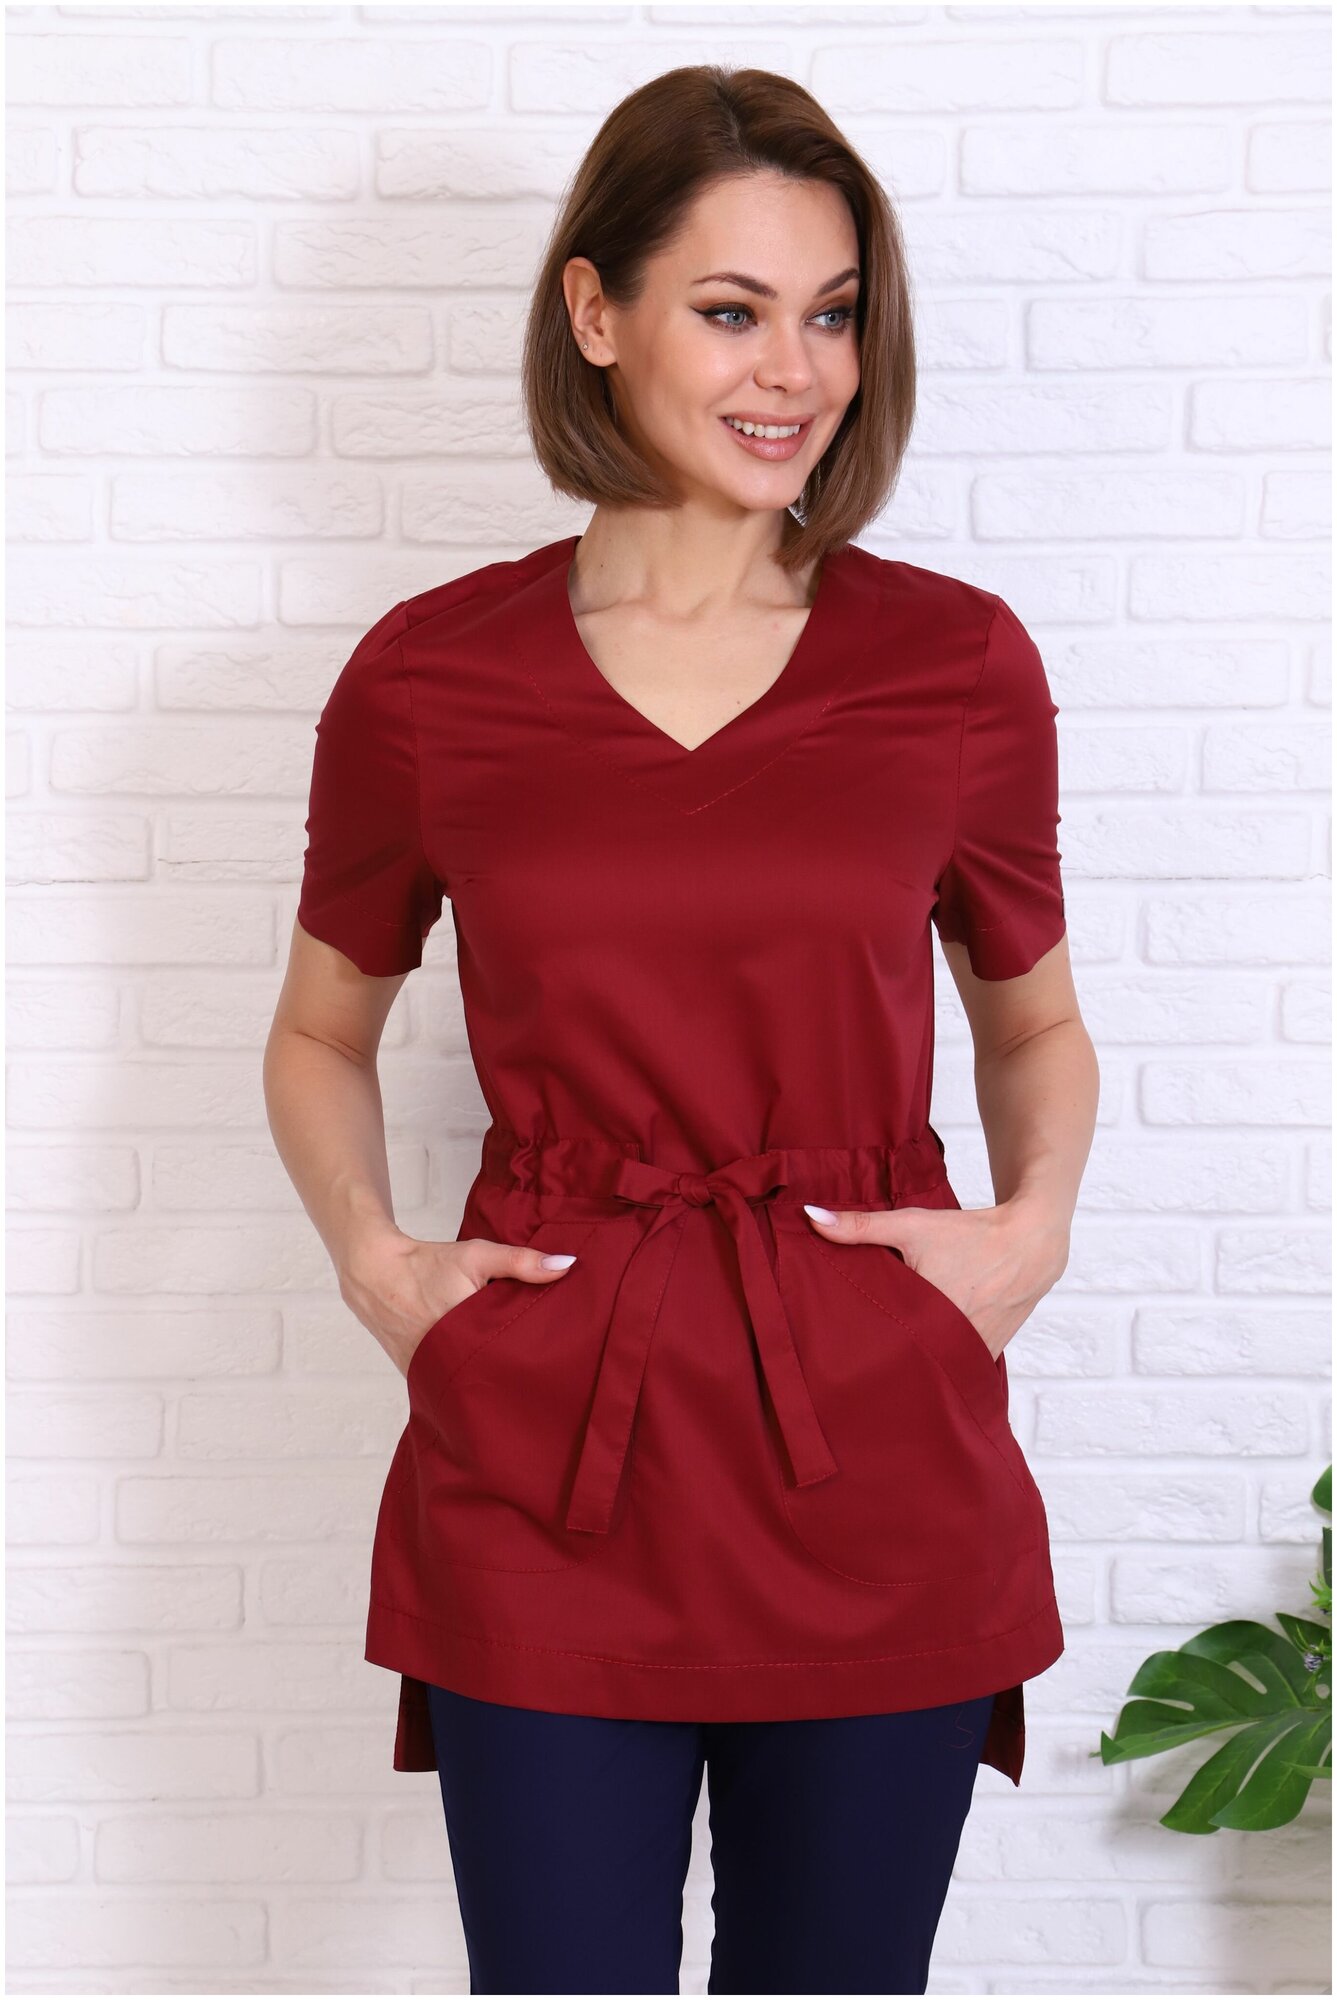 Туника/блузка медицинская женская Альба-С бордовая с поясом больших размеров. Куртка/рубашка рабочая удлиненная с разрезами стрейч. Спецодежда для женщин. Размер 46